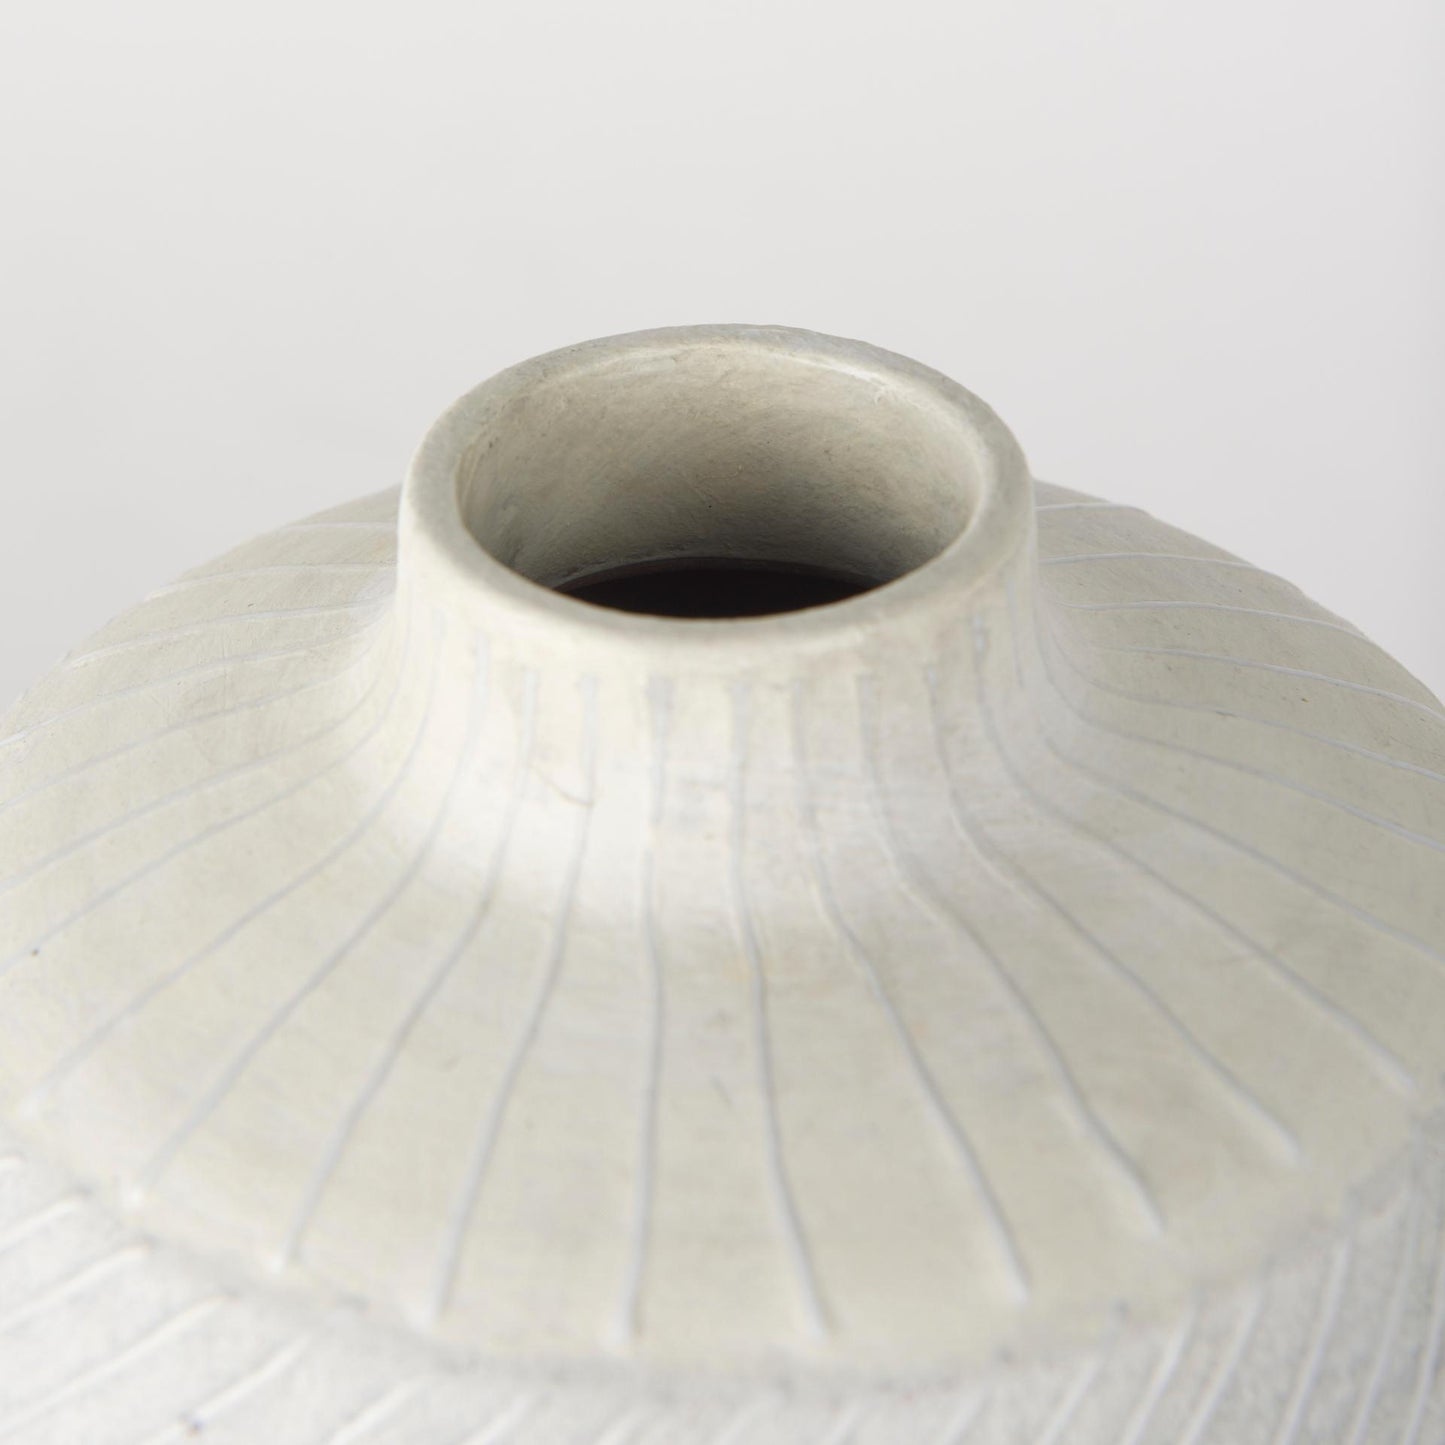 Blume 10H Off-White w/ Gray Textured Vase